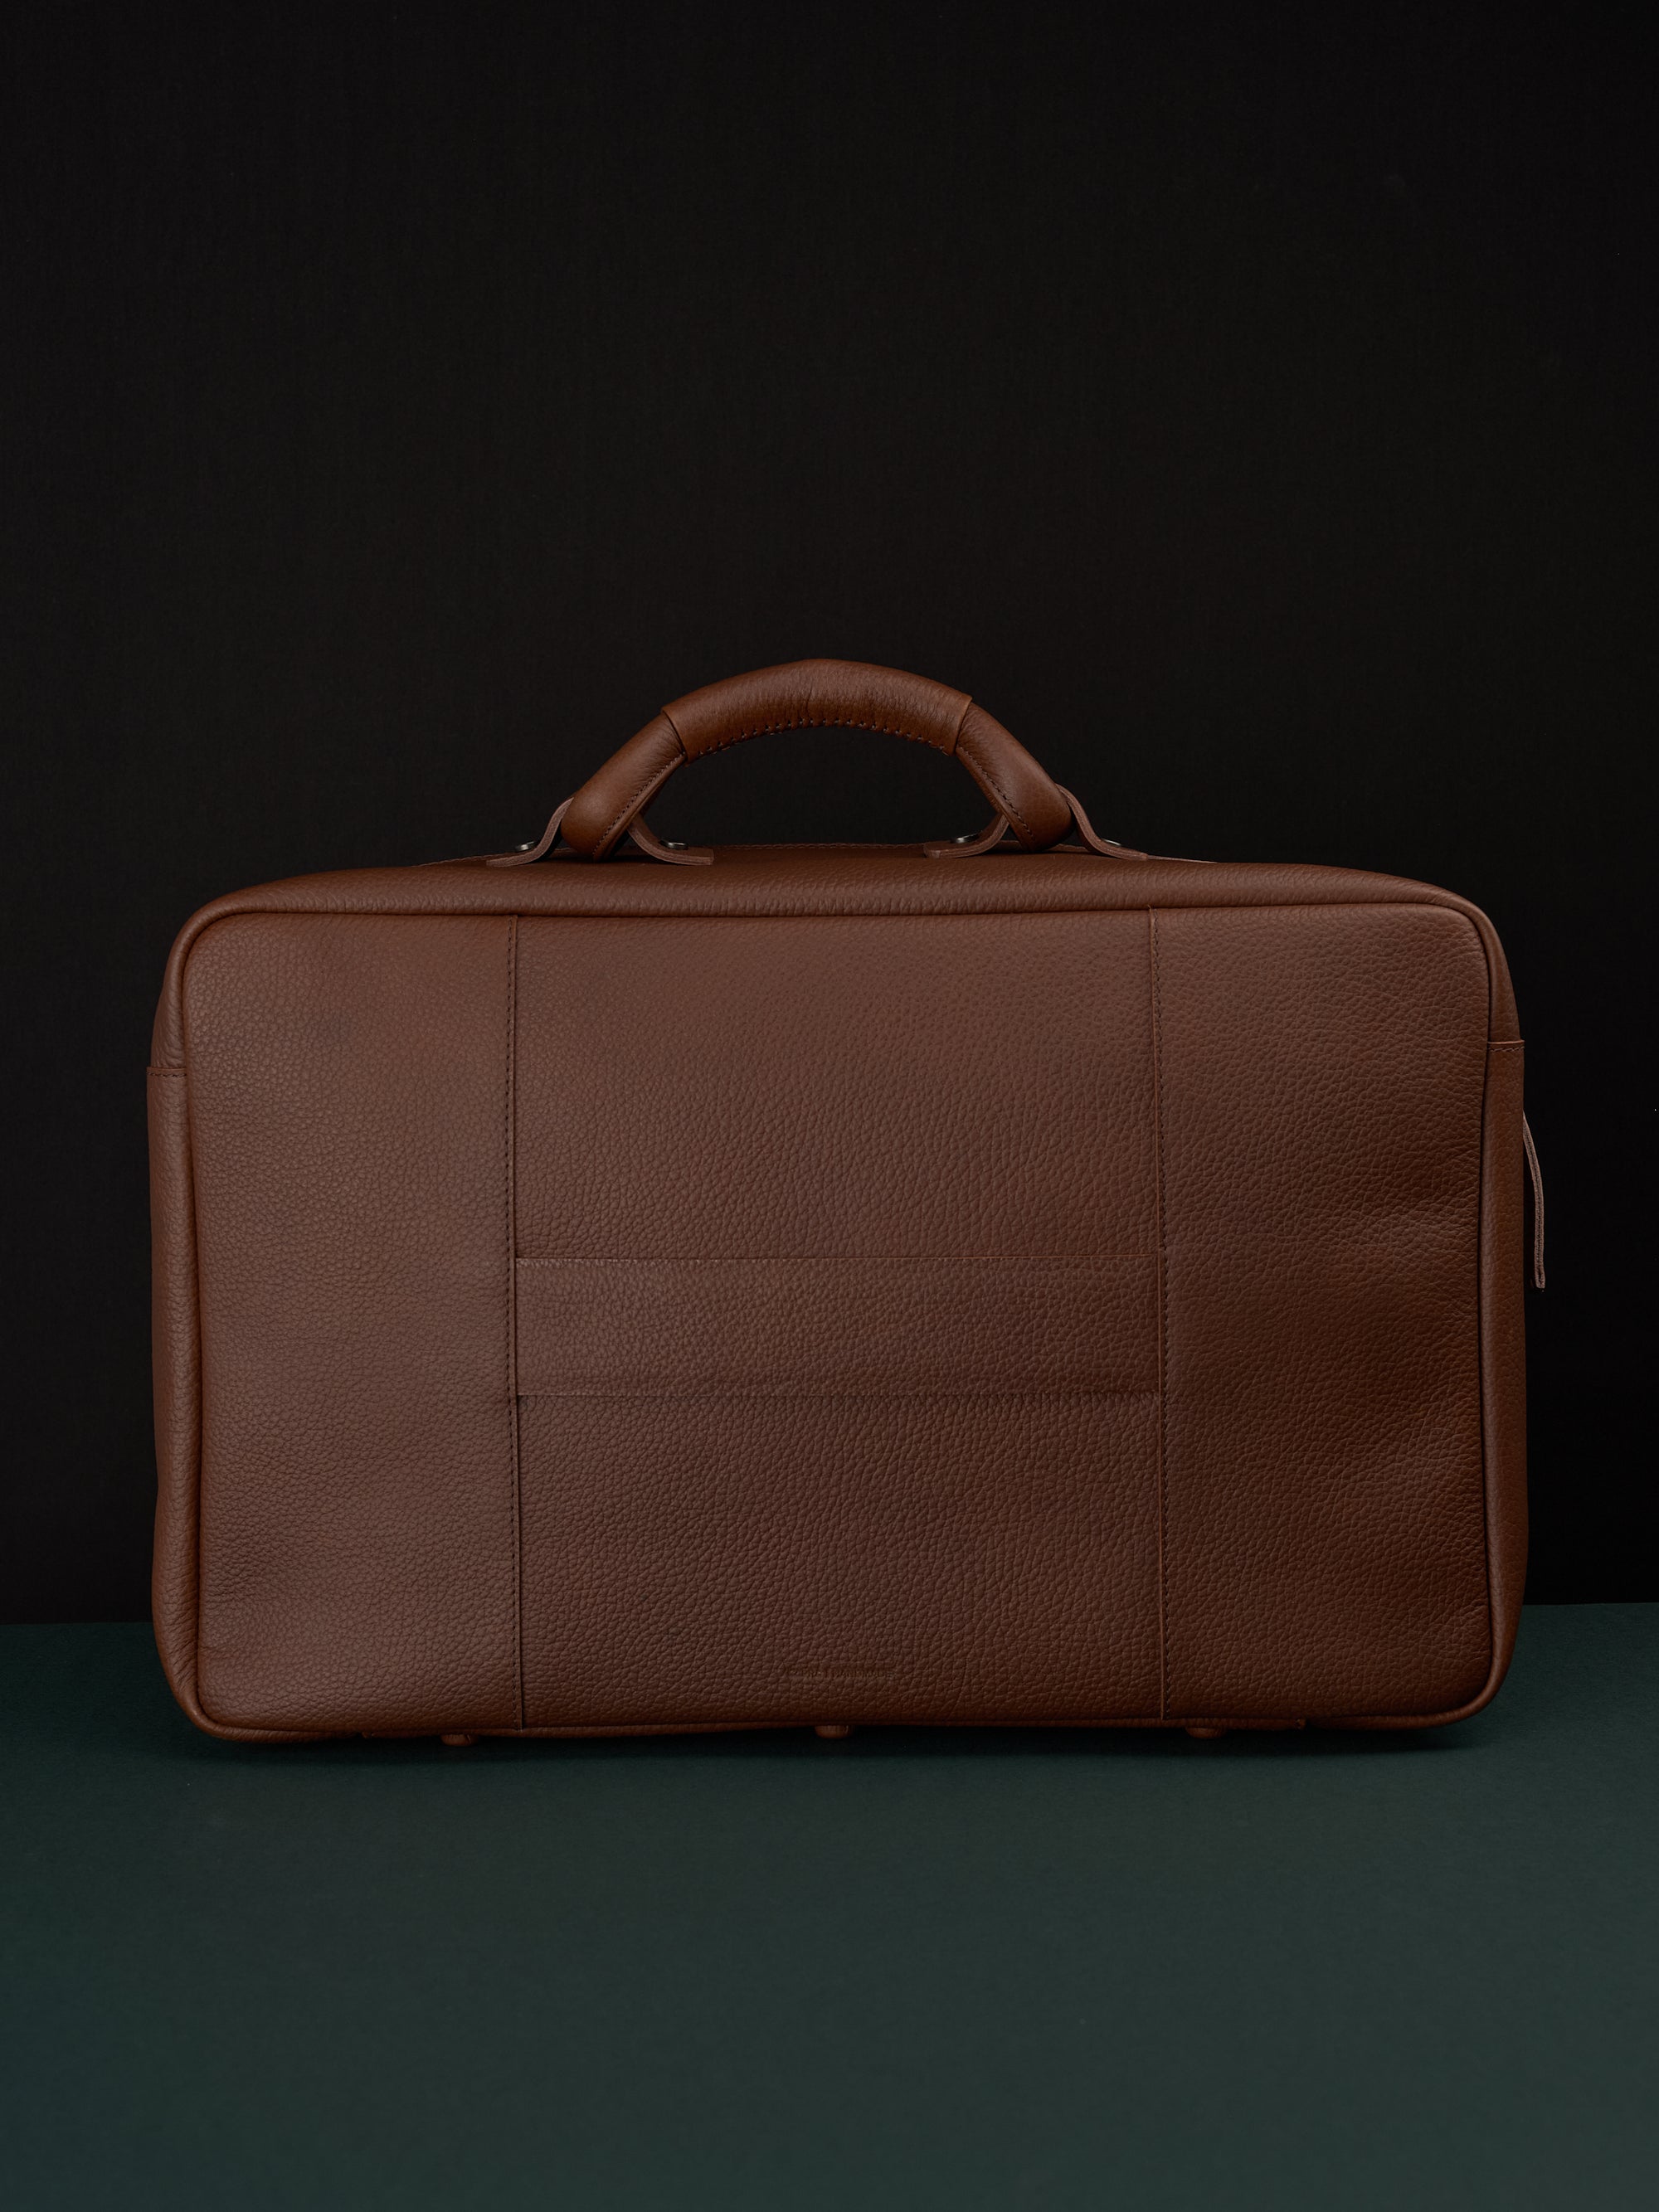 Luggage strap weekender bag men brown by Capra Leather